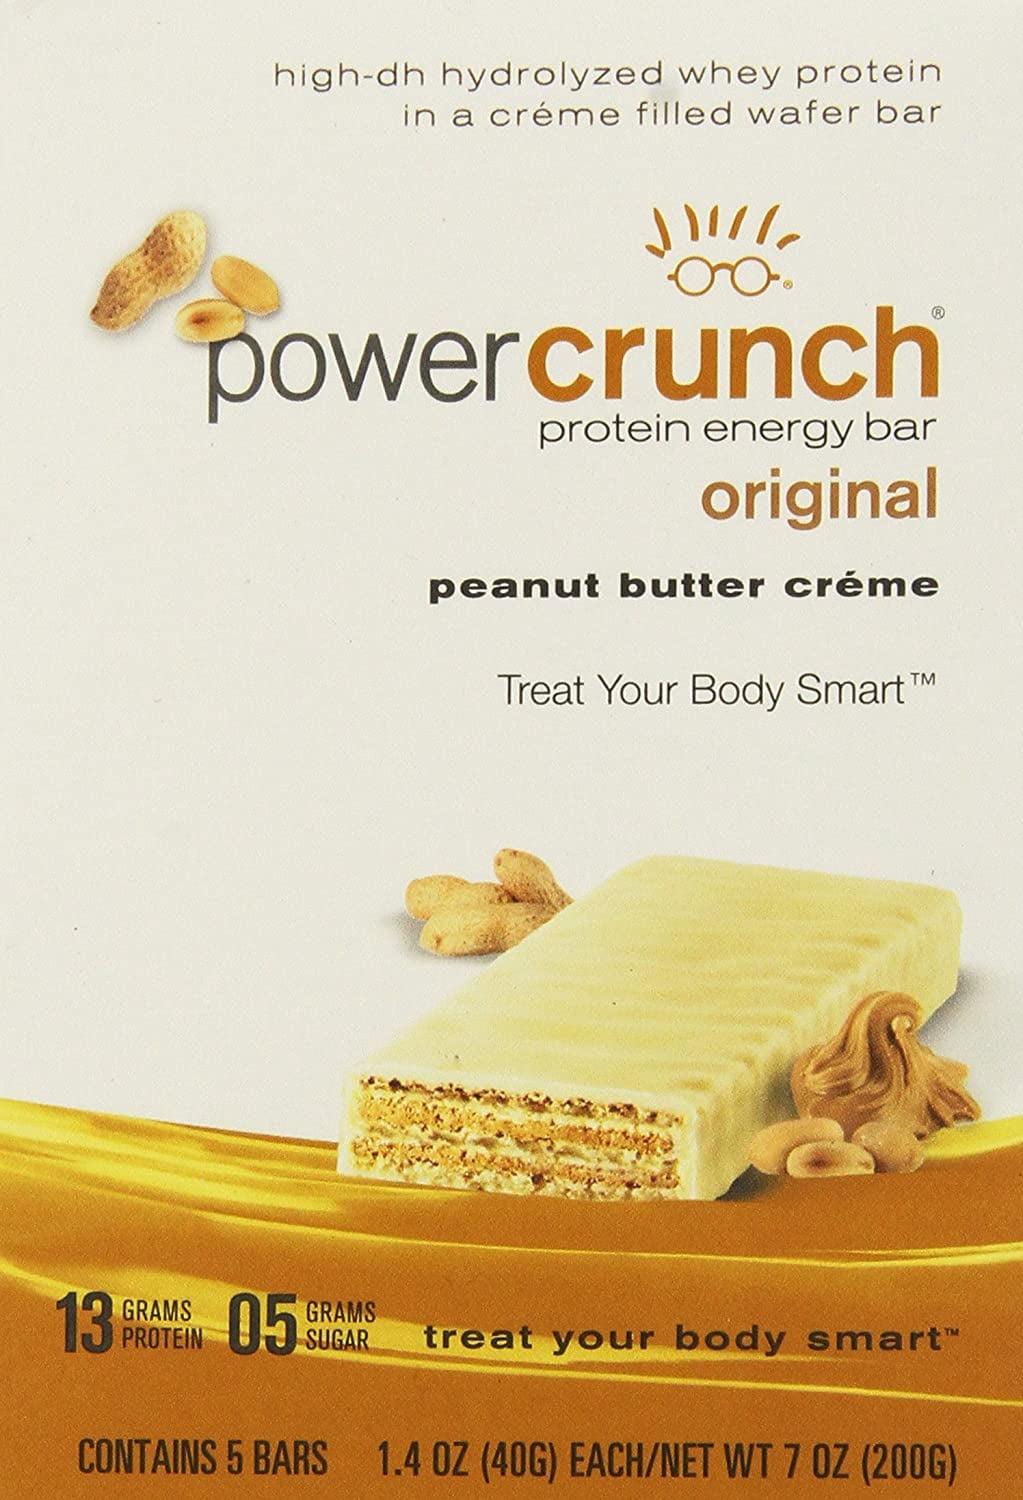 power crunch bars peanut butter